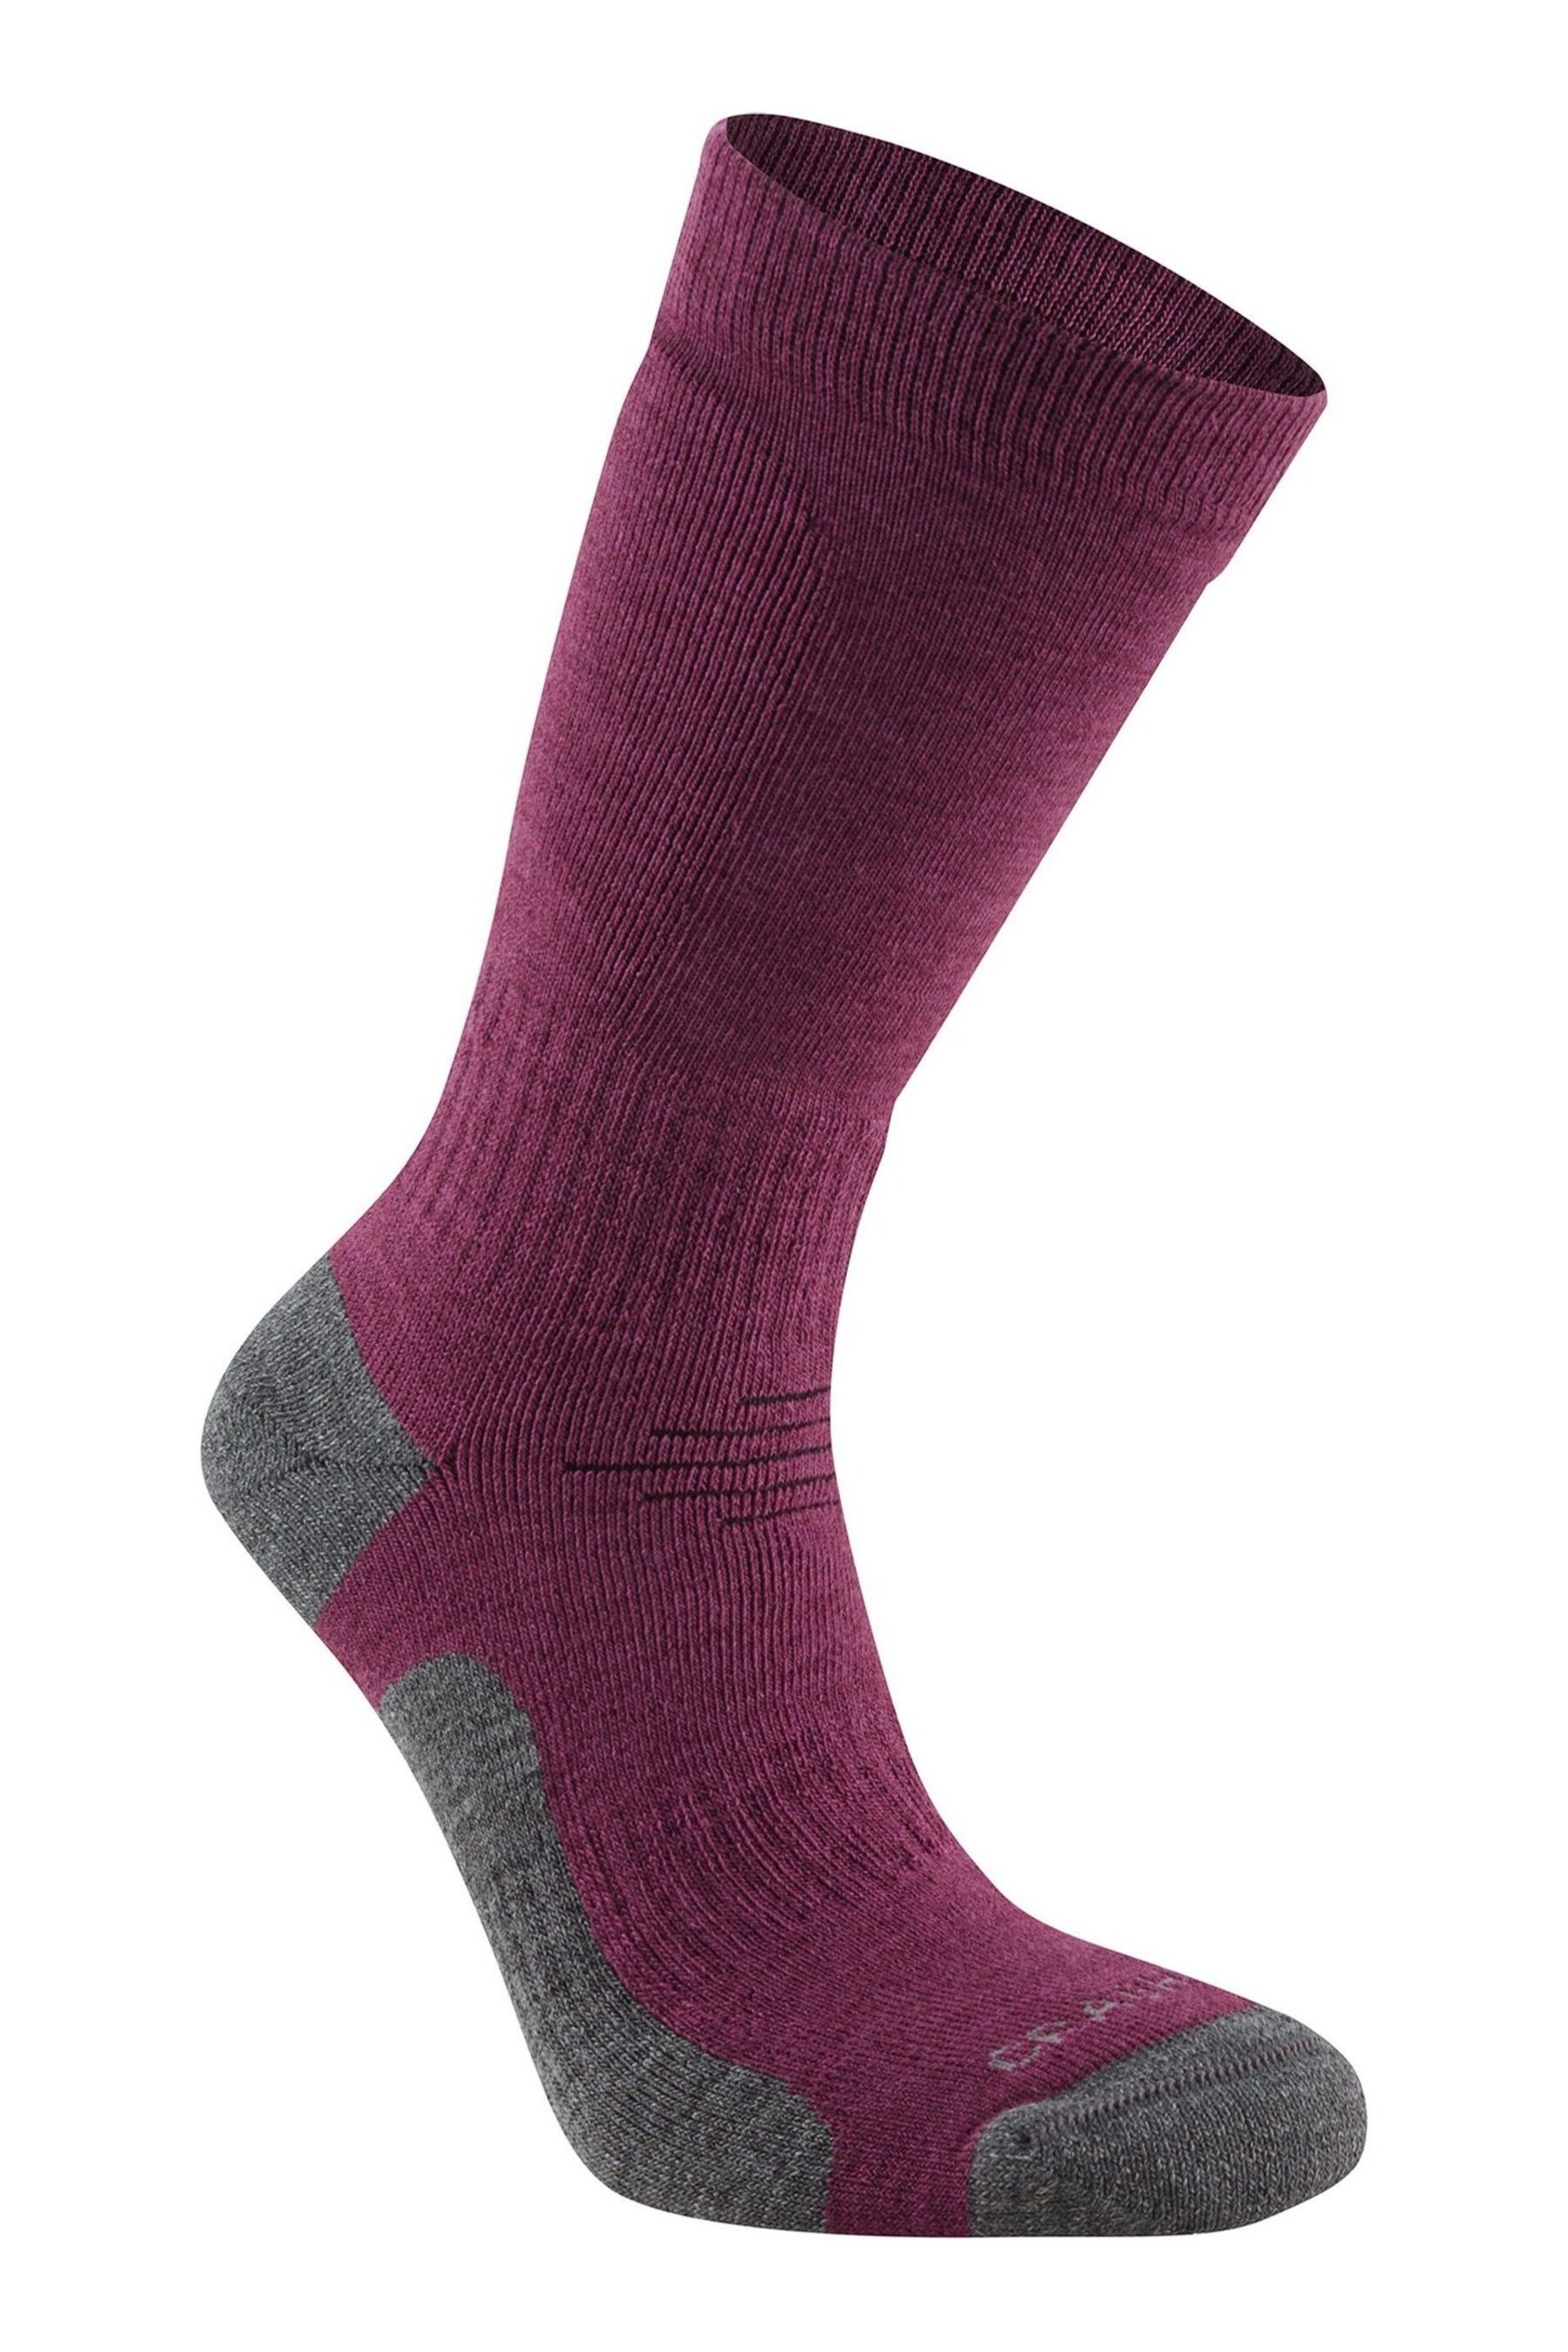 Craghoppers Purple Trek Socks - Image 1 of 1